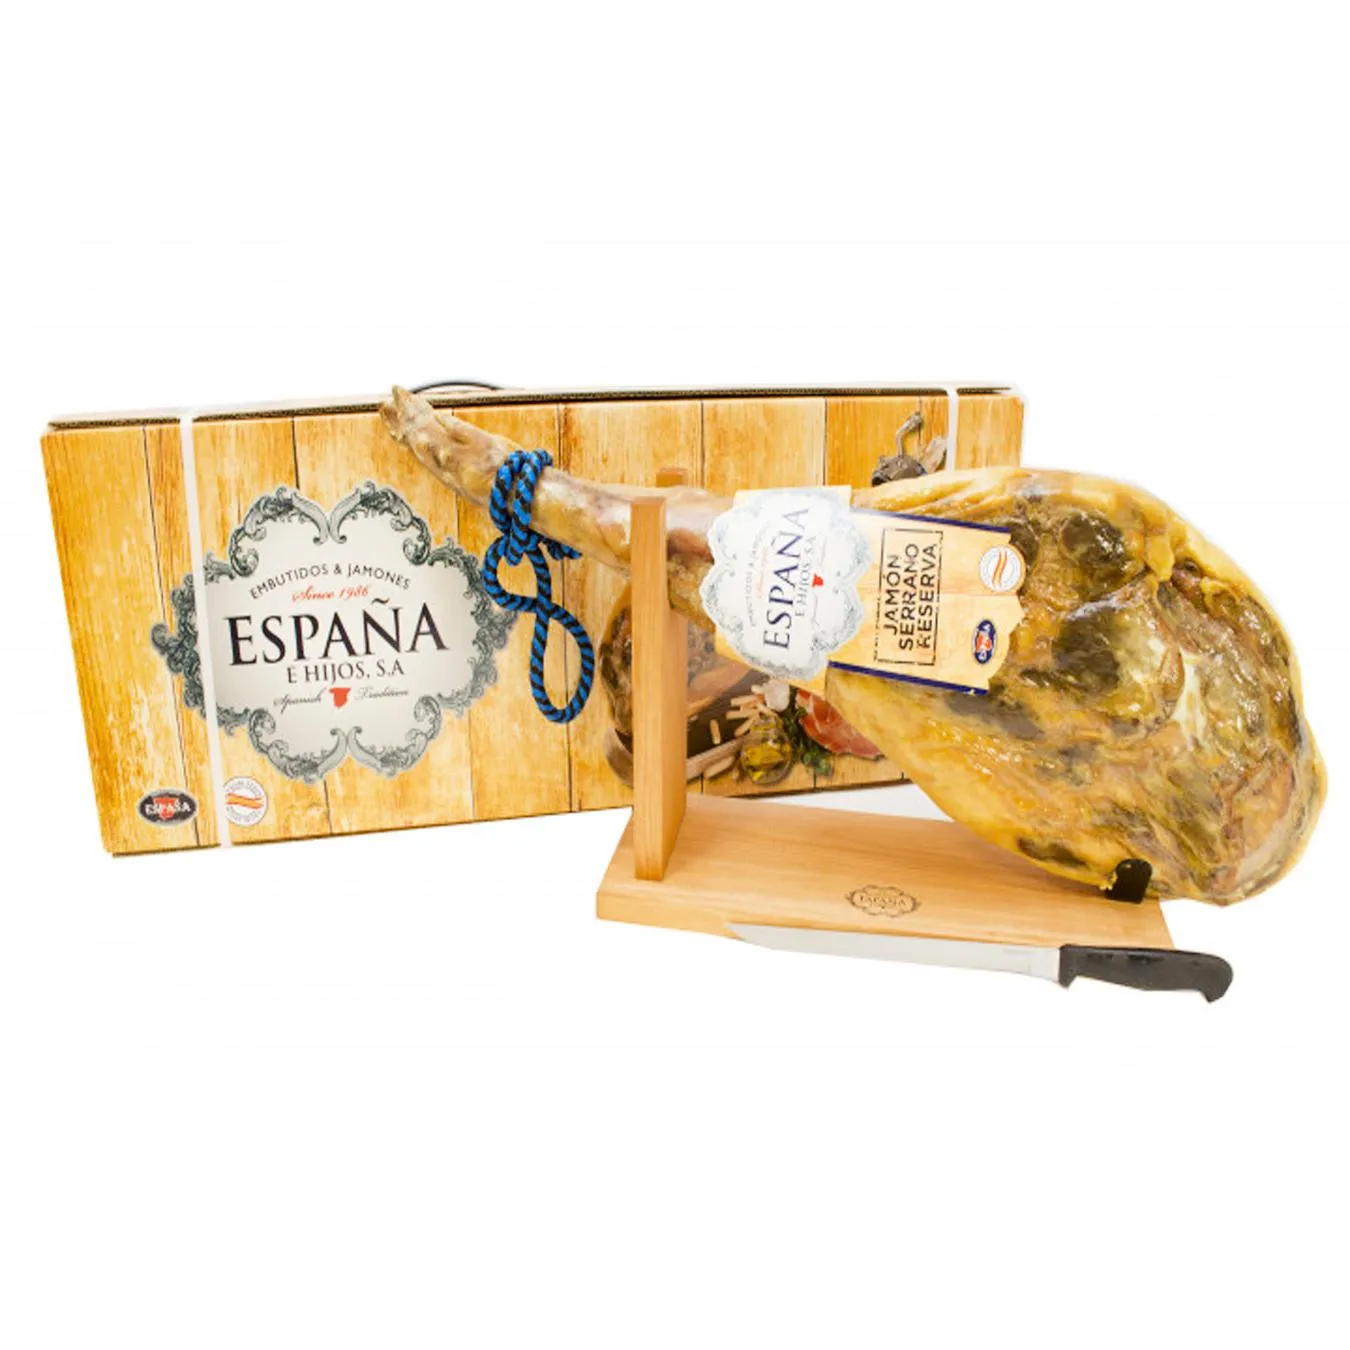 Хамон Серрано Резерва 14 мес Espana в подарочной упаковке шт + нож